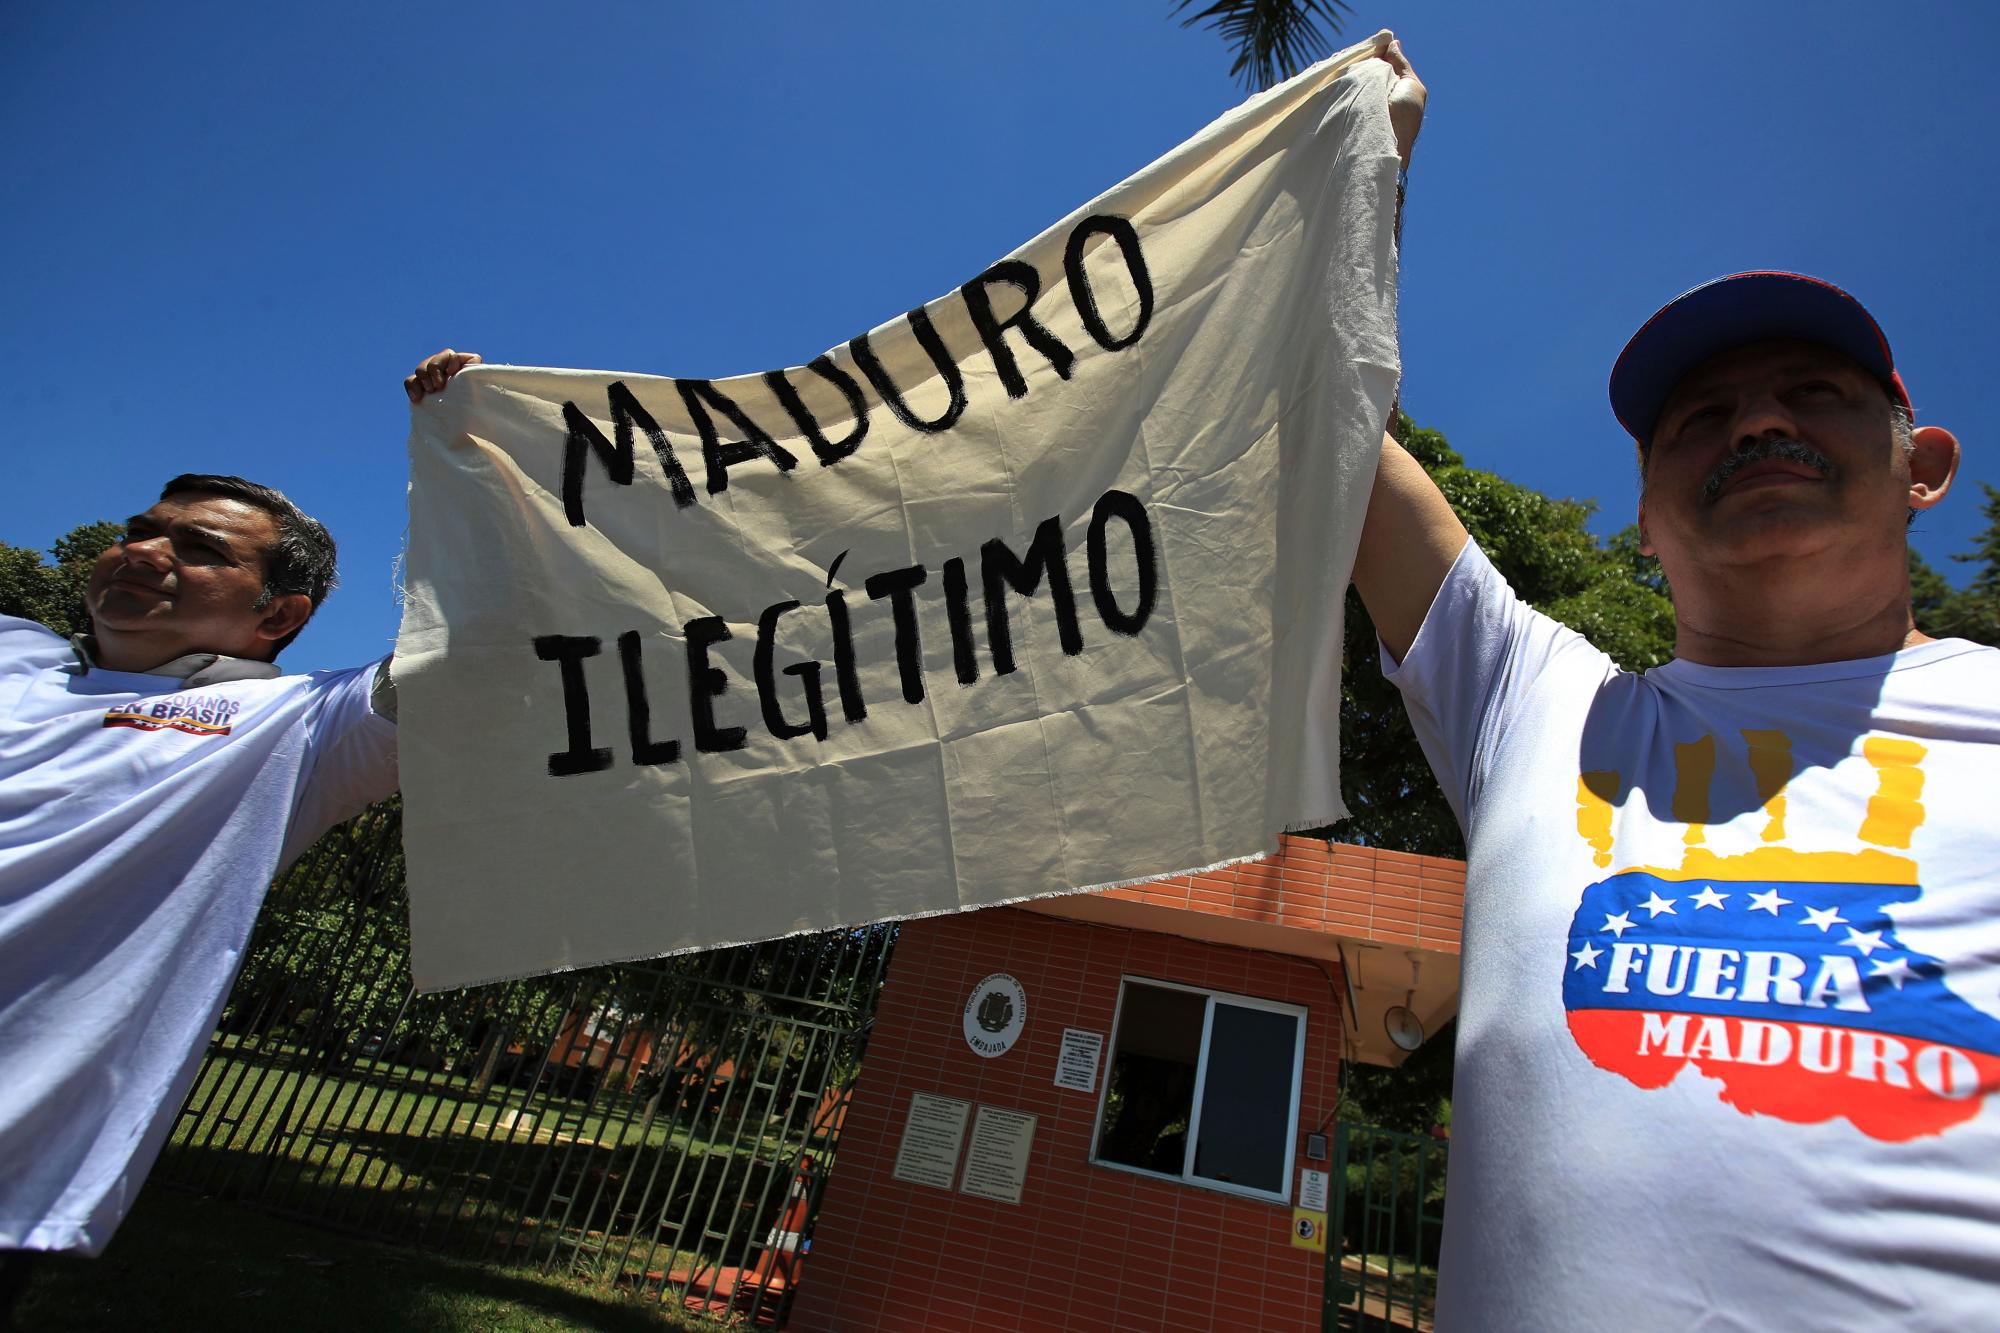 Los ciudadanos venezolanos que viven en Brasil sostienen un pedazo de tela con un mensaje que se lee en español; “Maduro ilegítimo” durante una protesta contra el gobierno del presidente Nicolas Maduro, frente a la embajada de Venezuela en Brasilia, Brasil, miércoles 23 de enero de 2019.